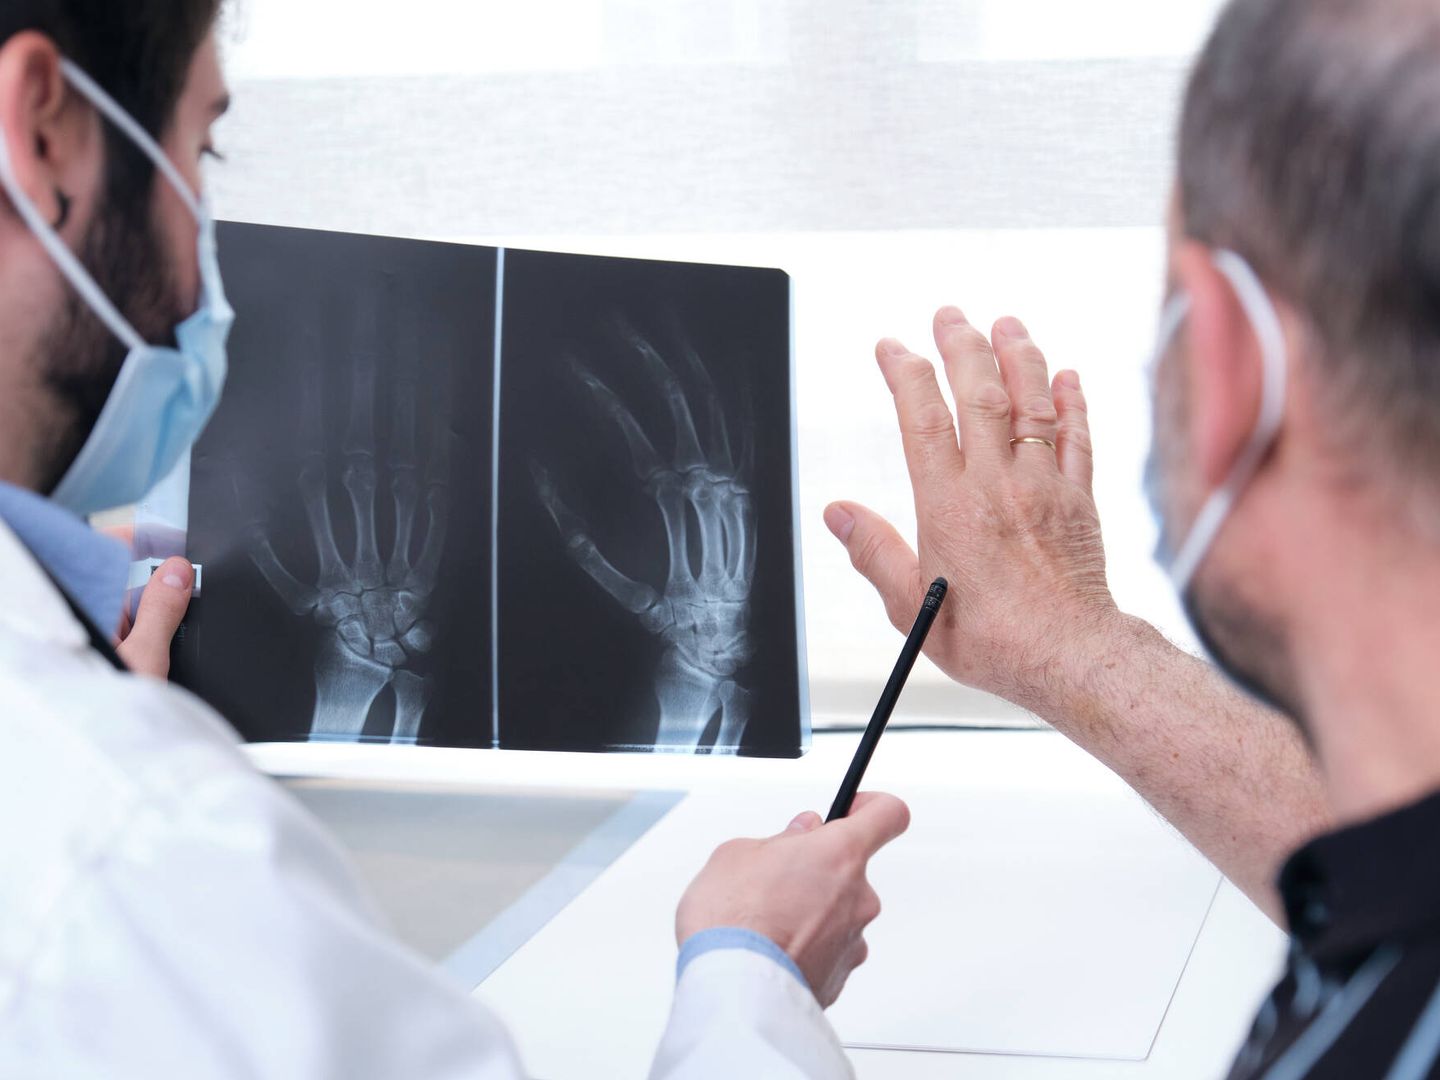 Las personas que trabajan con las manos corren más riesgo de padecer artrosis.